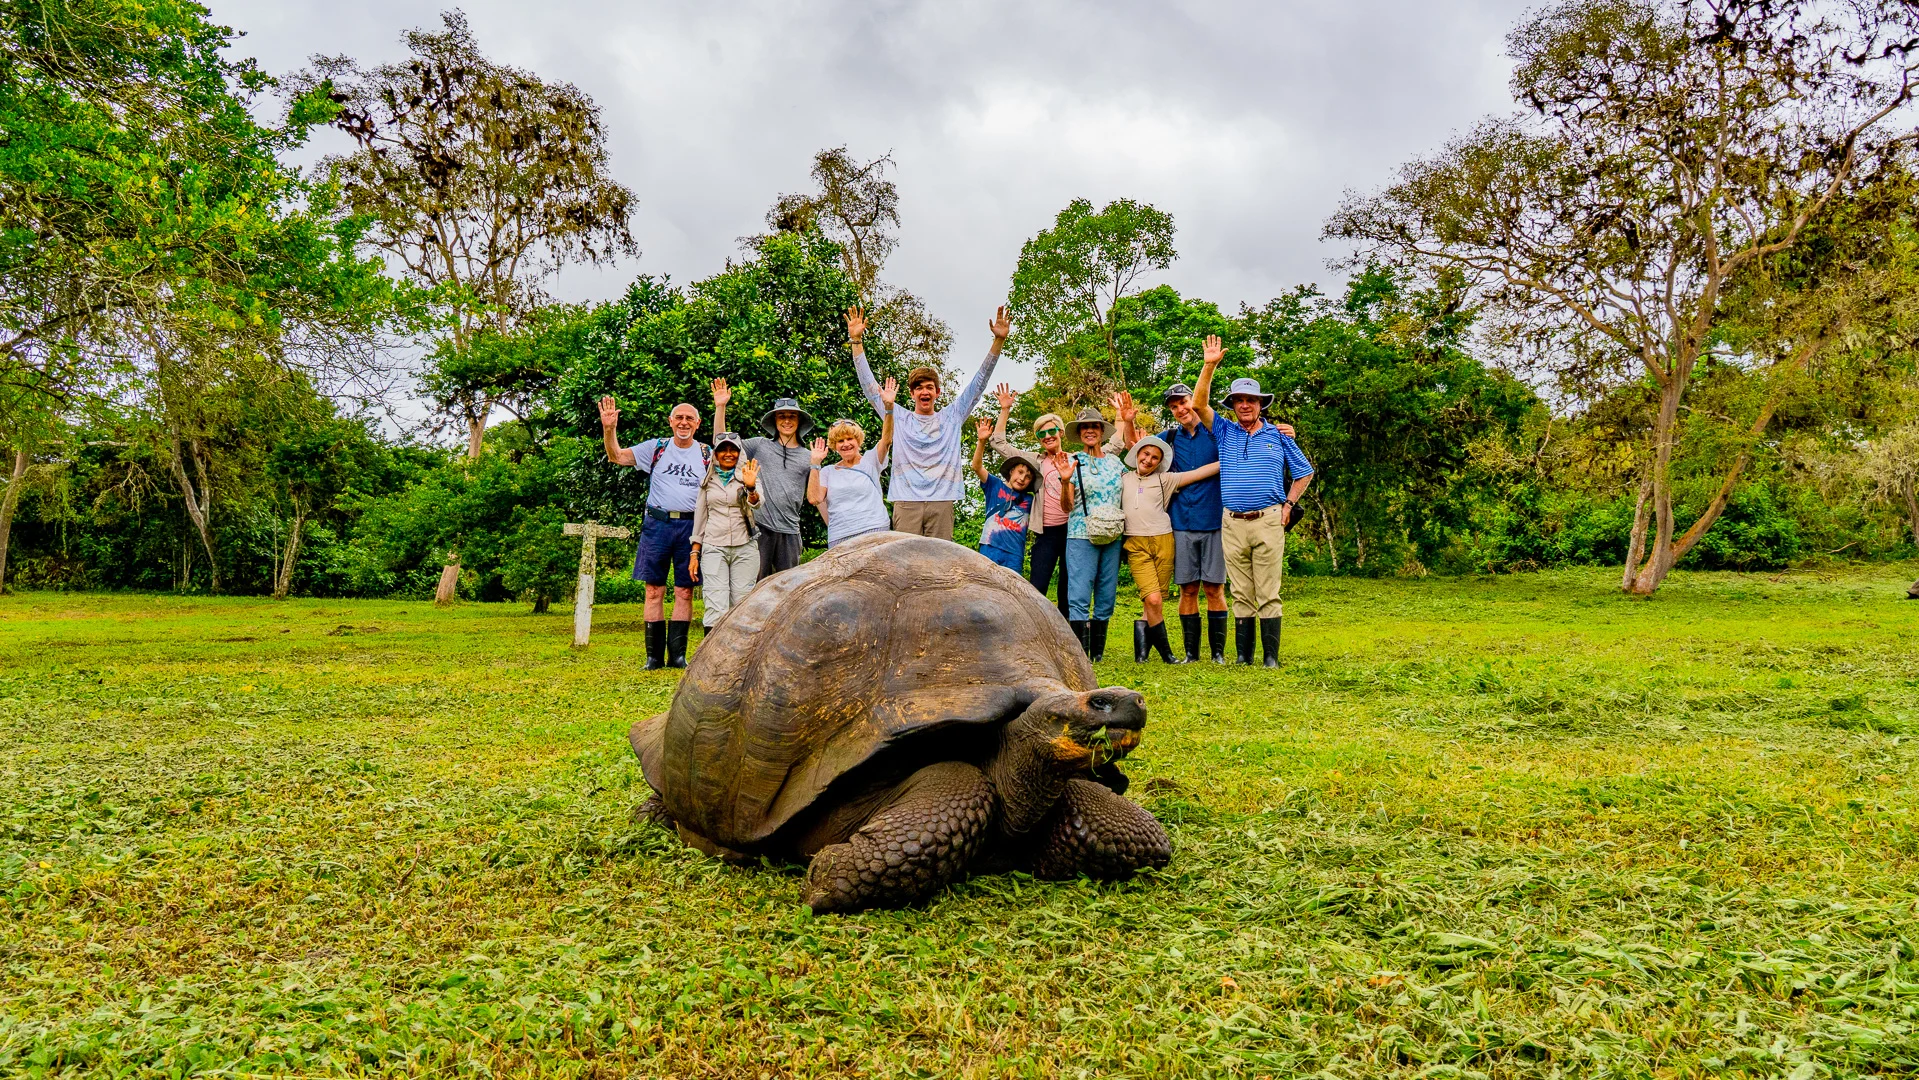 Galapagos, Group w Giant Tortoise, Santa Cruz,Andres Ballesteros